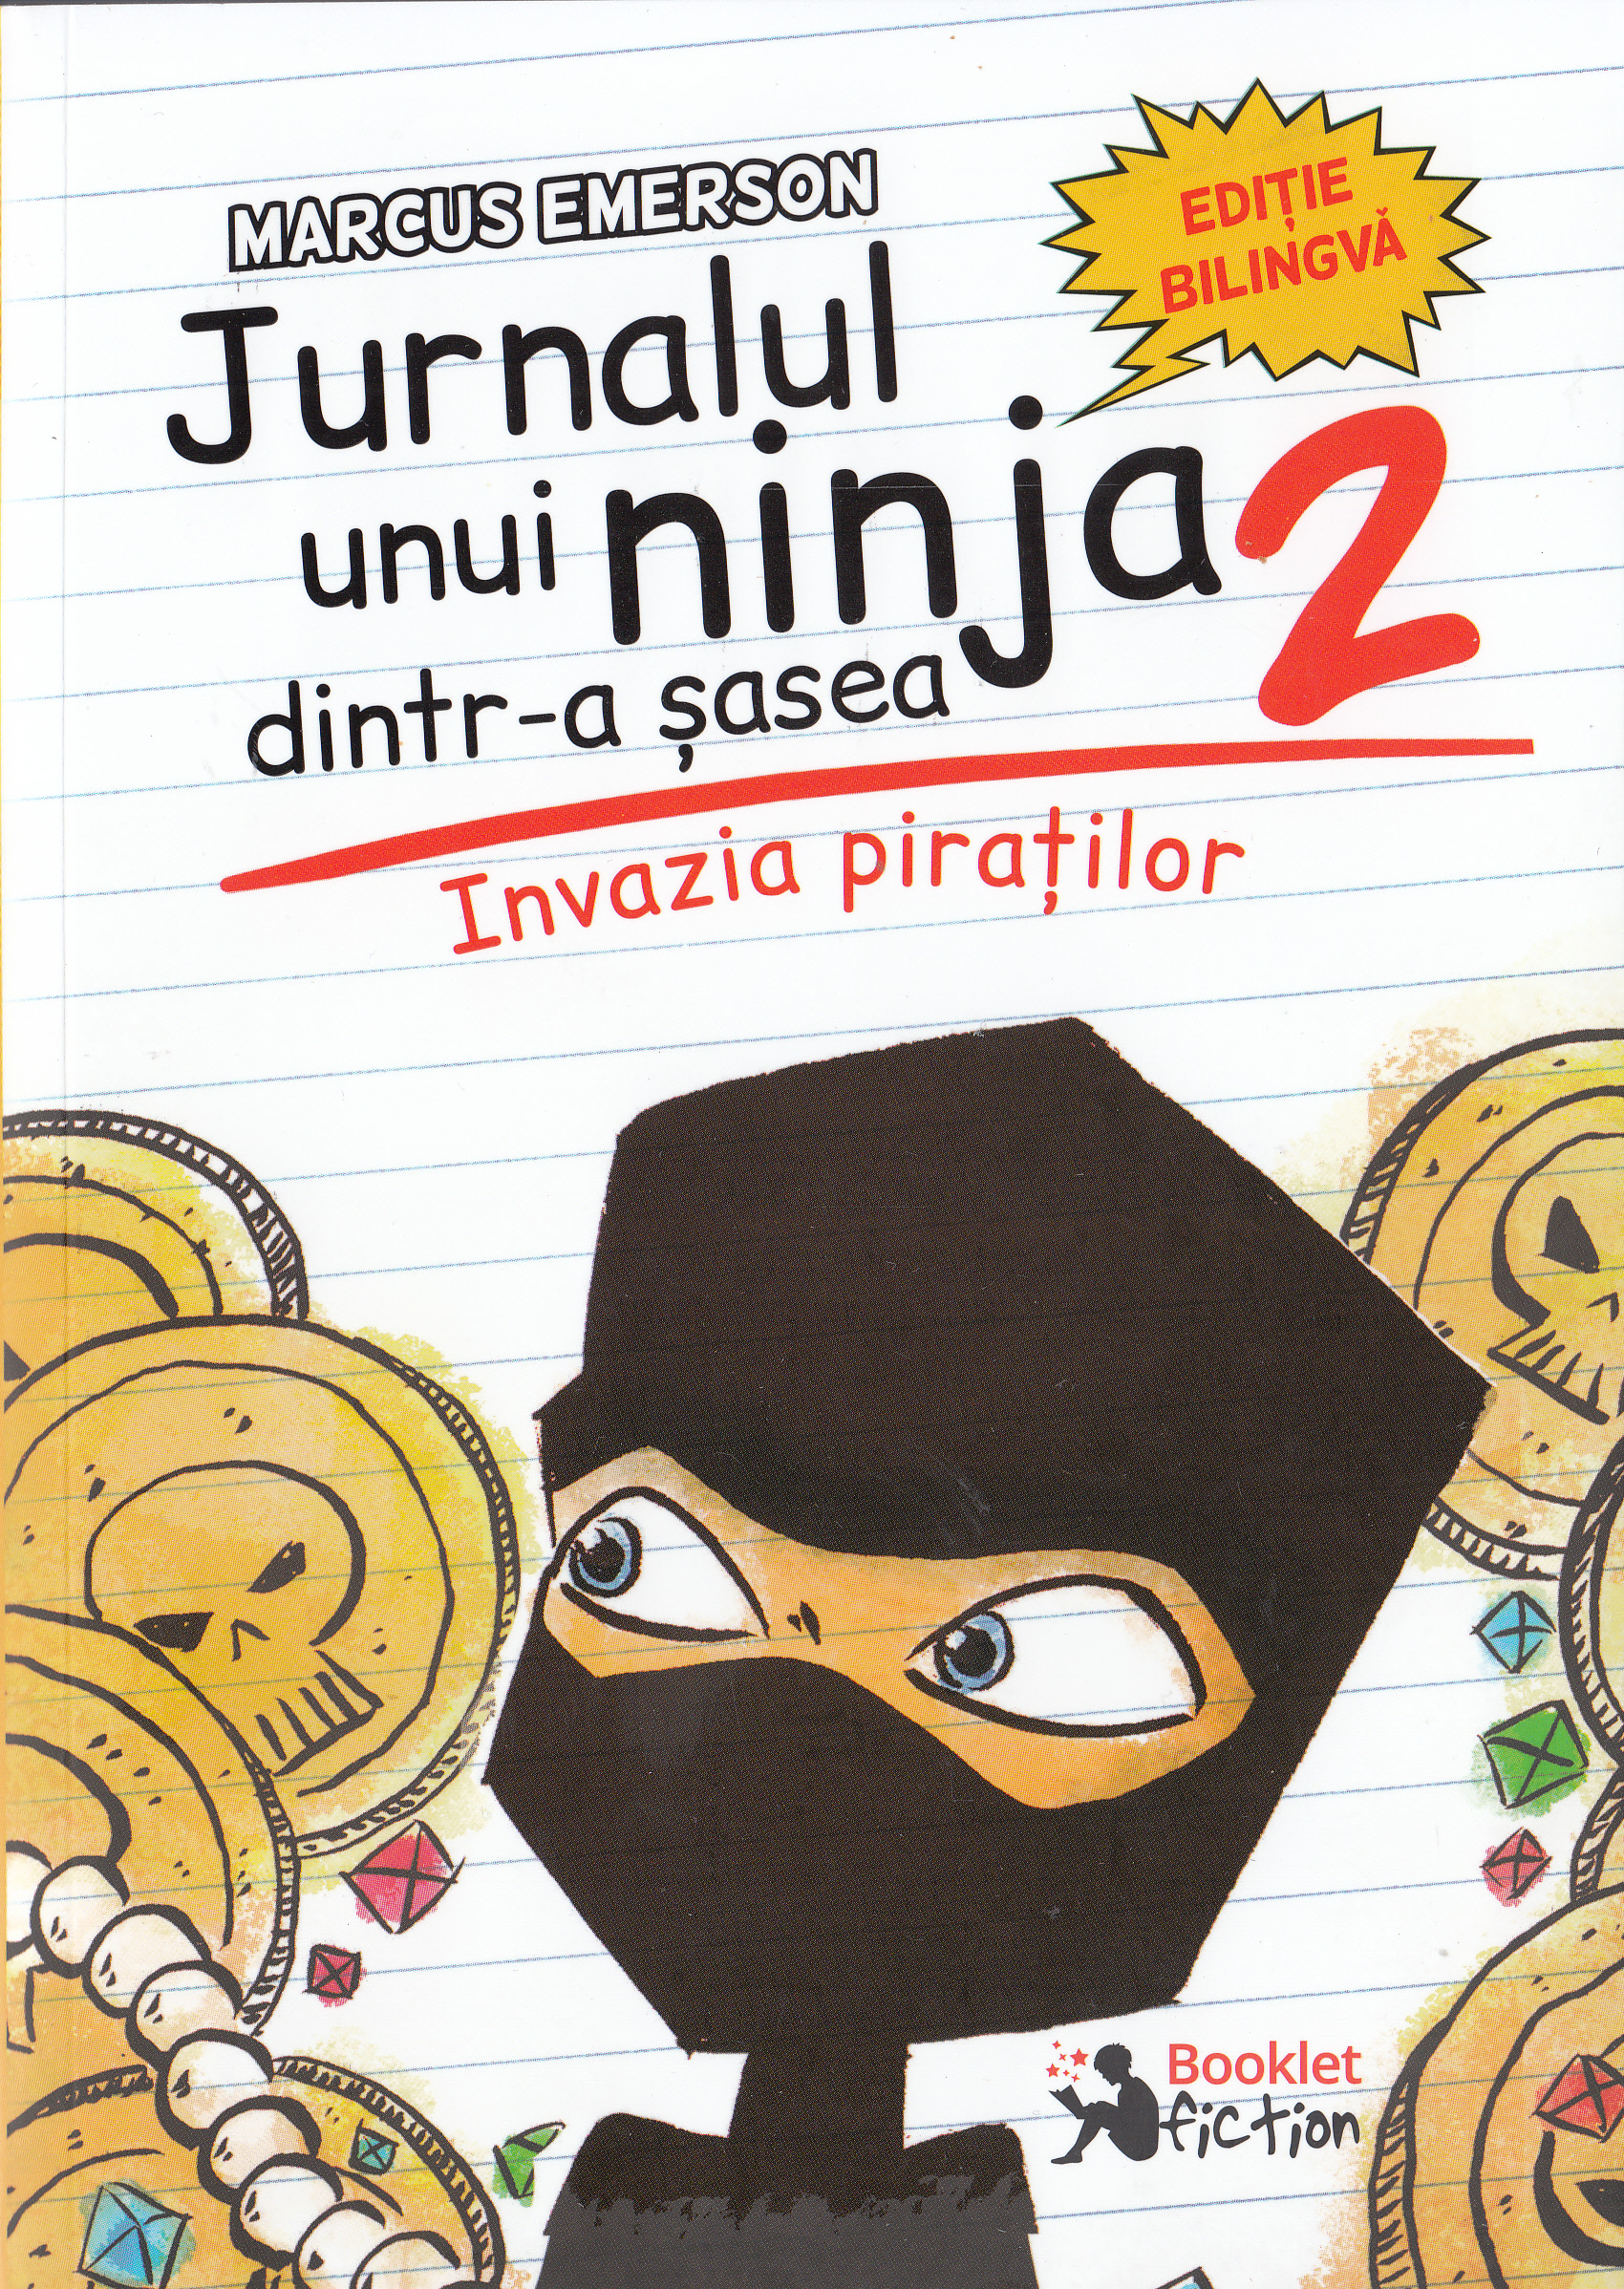 Jurnalul unui ninja dintr-a sasea Vol.2: Invazia piratilor - Marcus Emerson